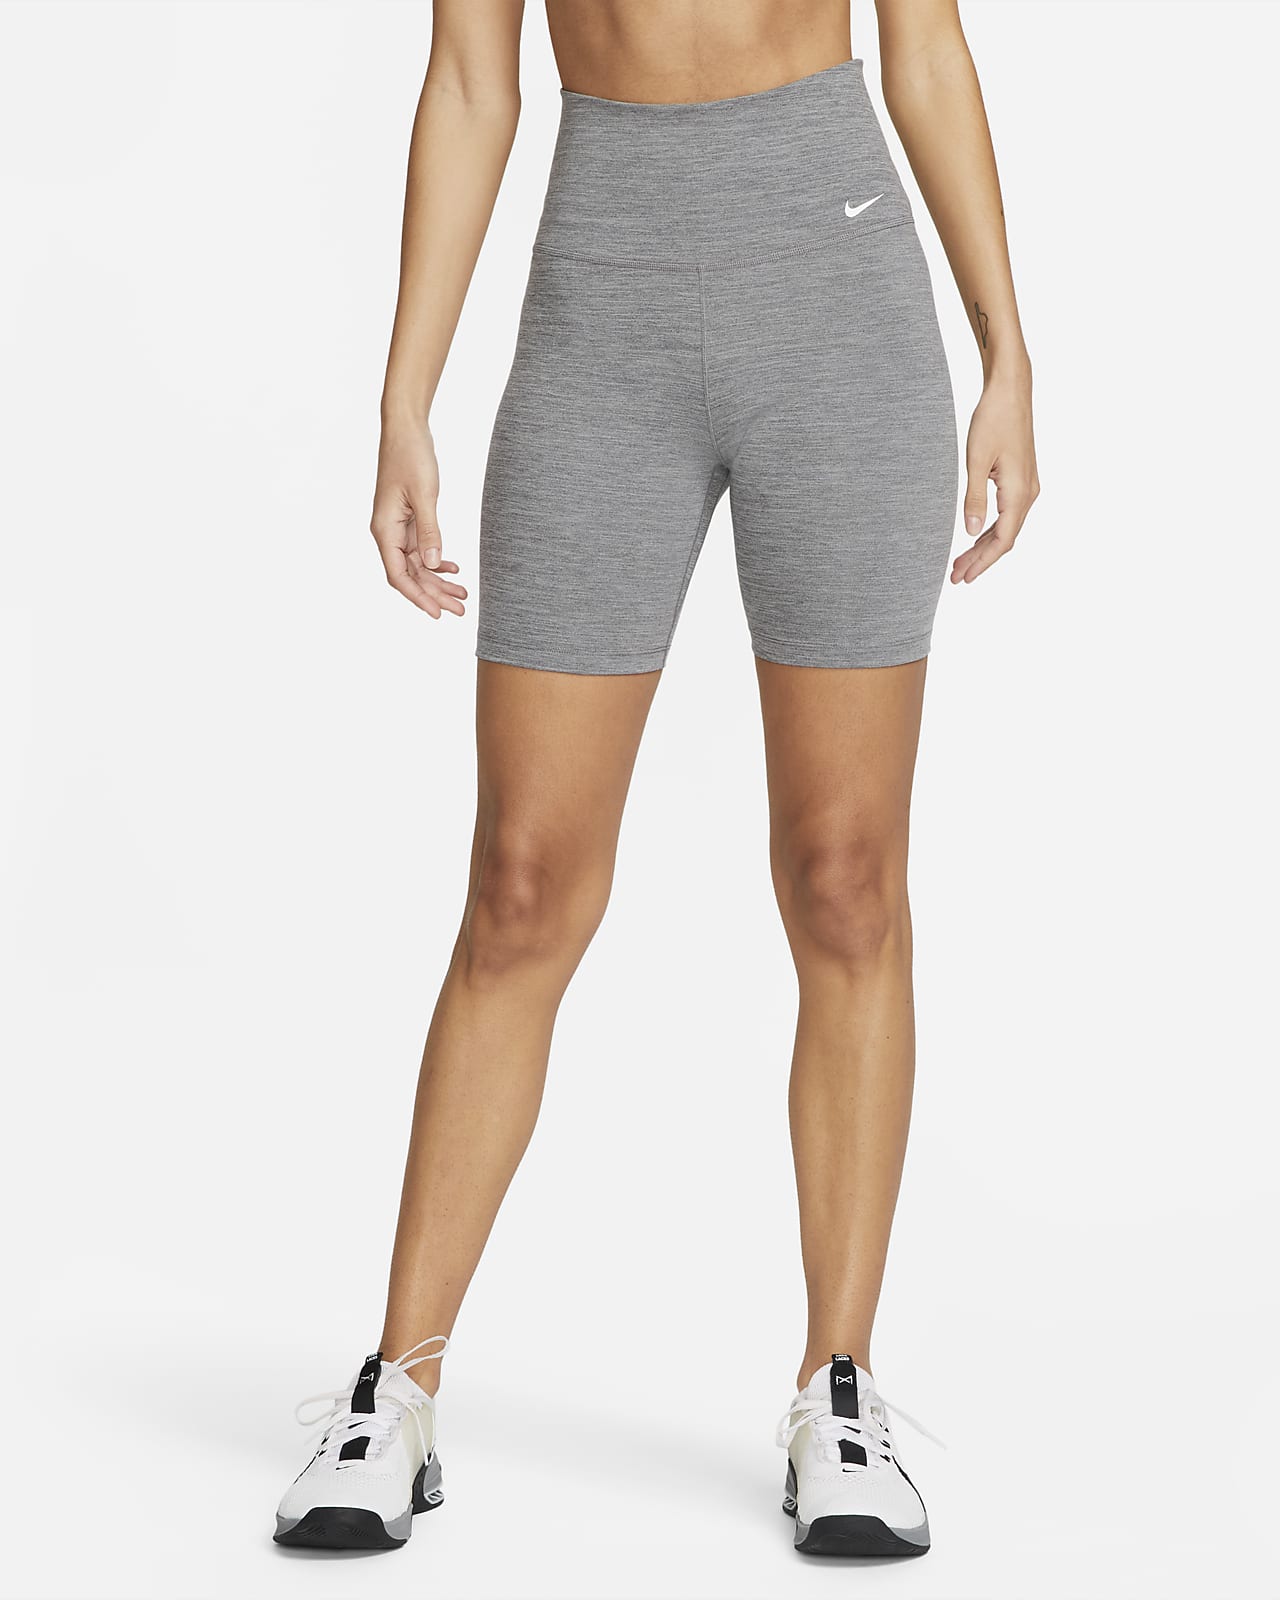 Nike Women's Pro Tight (Black/White, X-Small) 